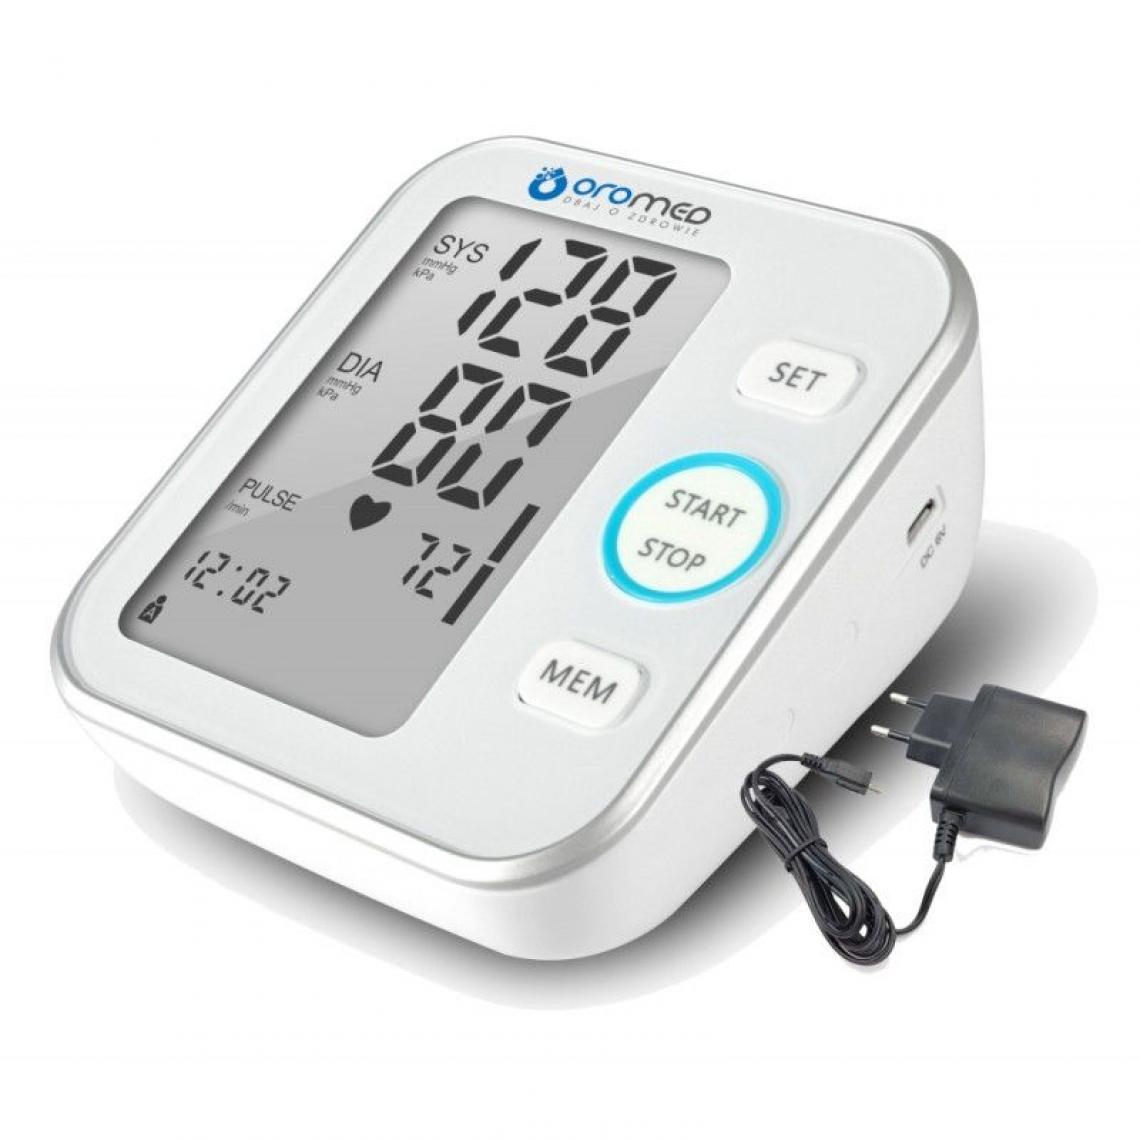 Inconnu - HI-TECH MEDICAL ORO-N6 BASIC+ZAS tensiomètre (pression artérielle) Bras supérieur Automatique - Tensiomètre connecté